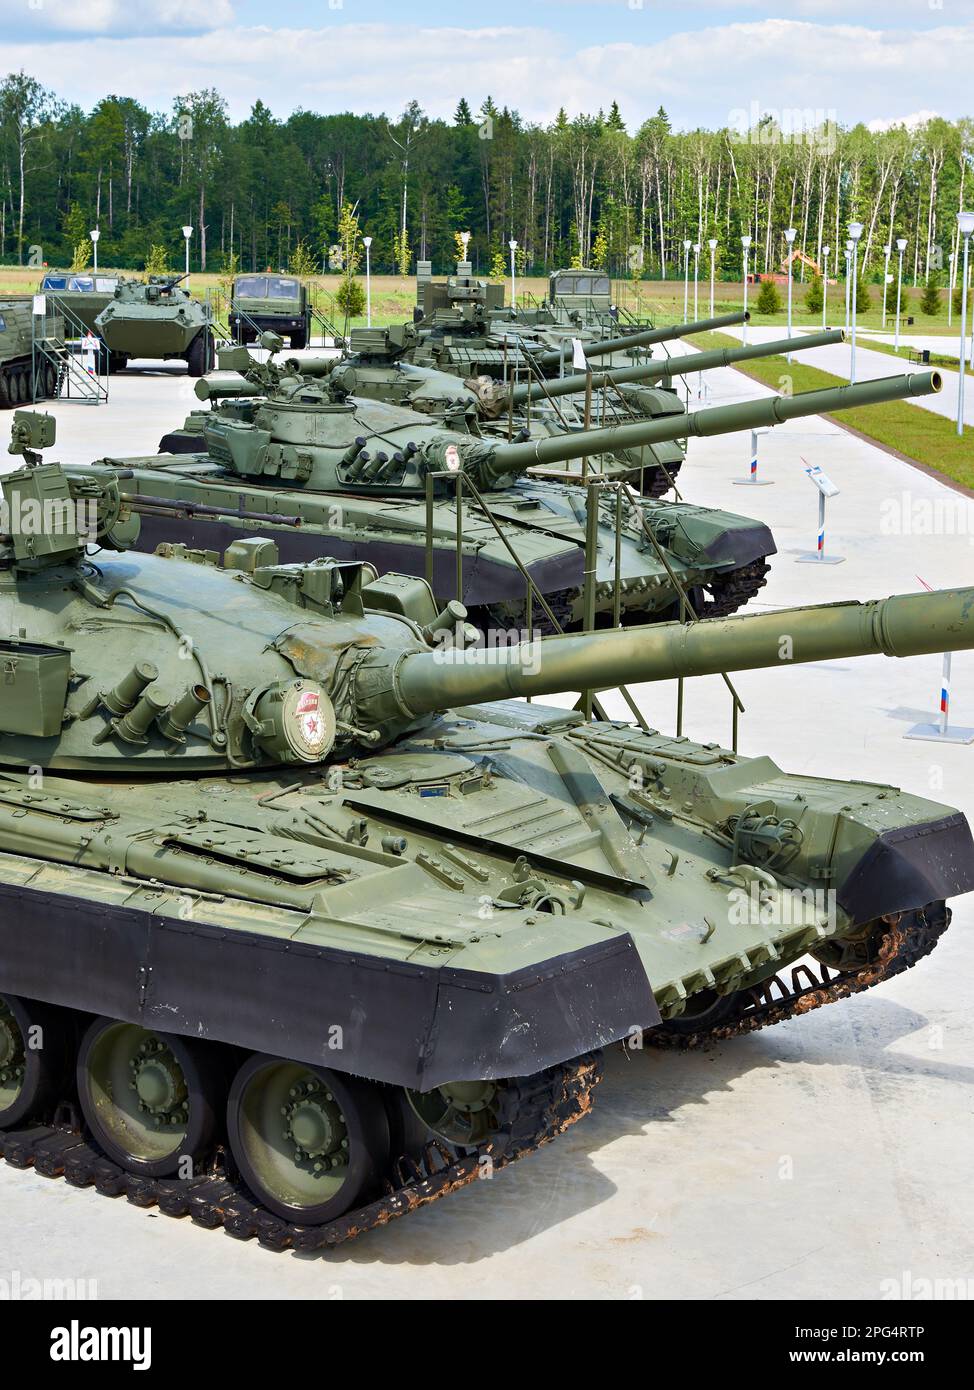 PARC PATRIOT, KUBINKA, RÉGION DE MOSCOU, RUSSIE - 11 juillet 2017 : principaux chars de bataille soviétiques Banque D'Images